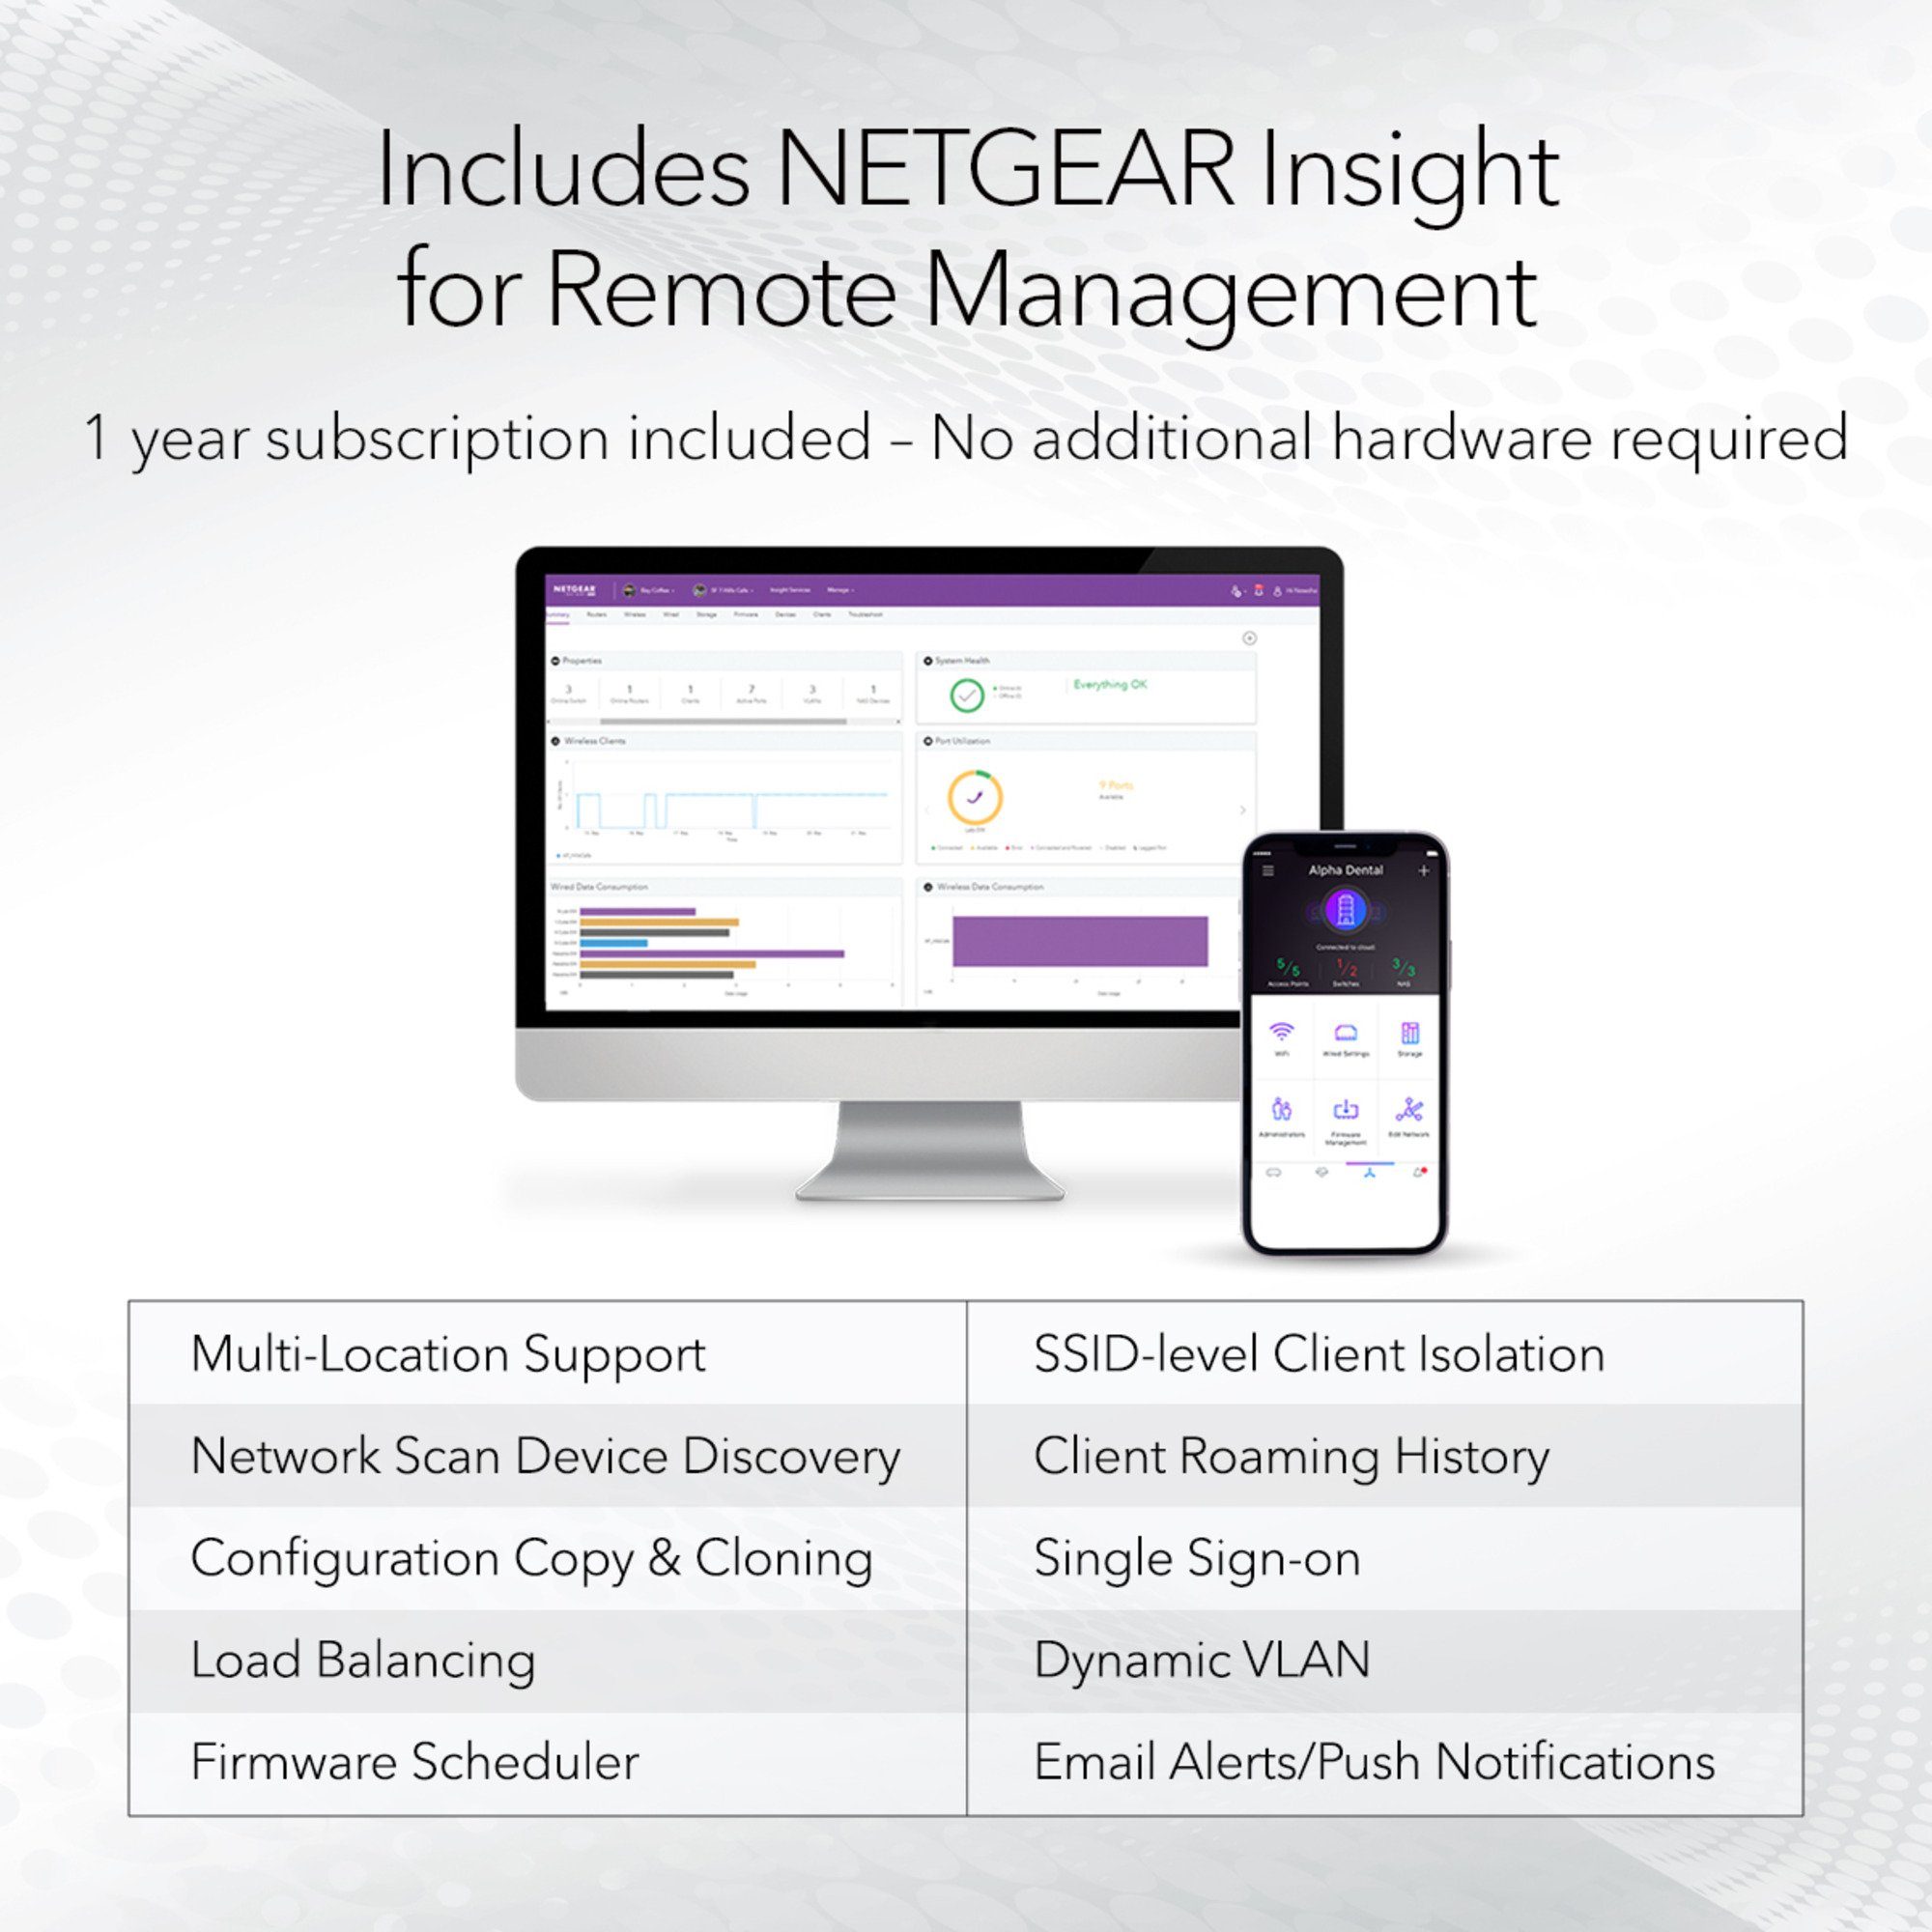 NETGEAR Netgear WAX630E, Access Point WLAN-Repeater